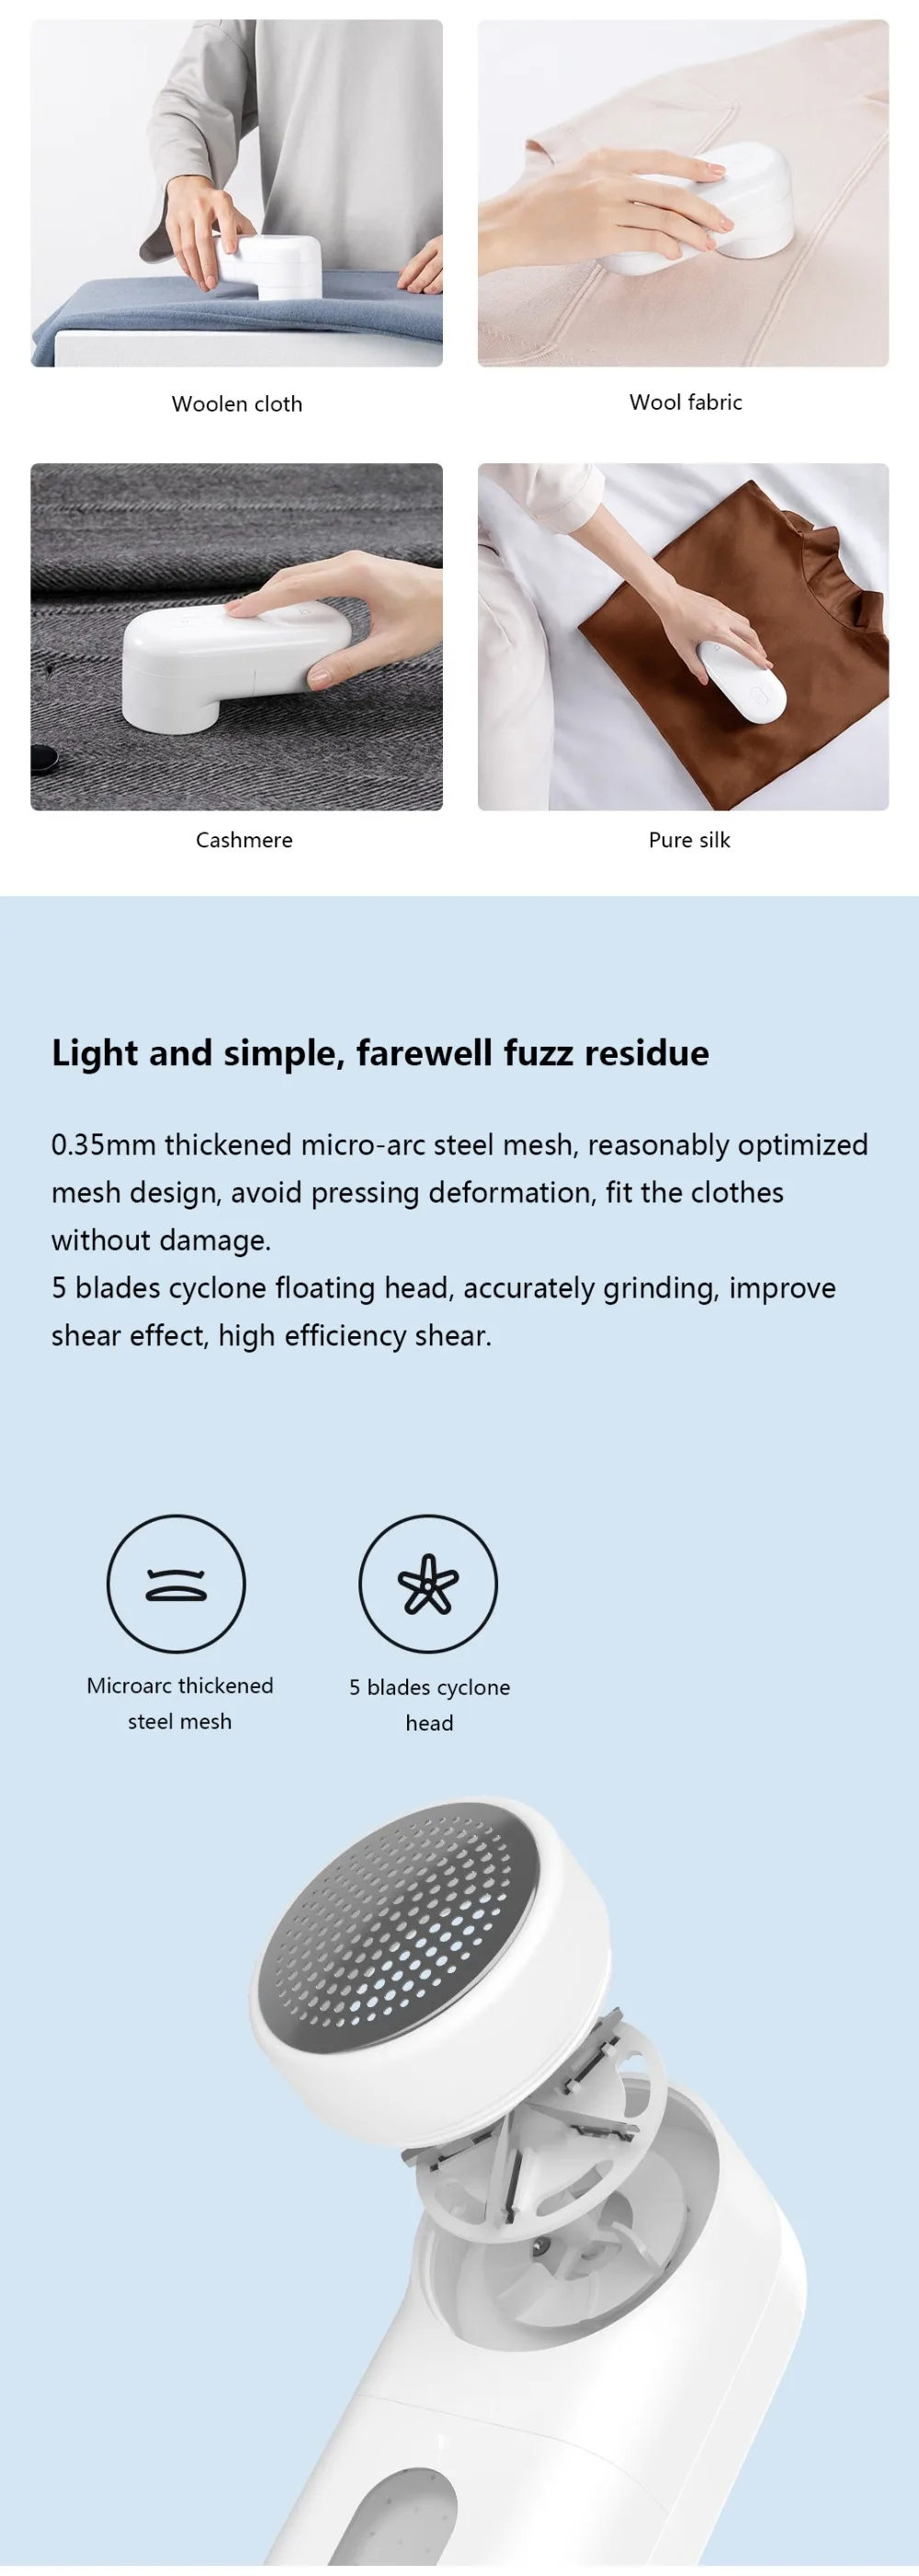 Xiaomi Mijia переносное средство для удаления ворса шариковый триммер с свитер жидкость для снятия триммер с двигателем 5-лист Циклон плавающей режущая головка